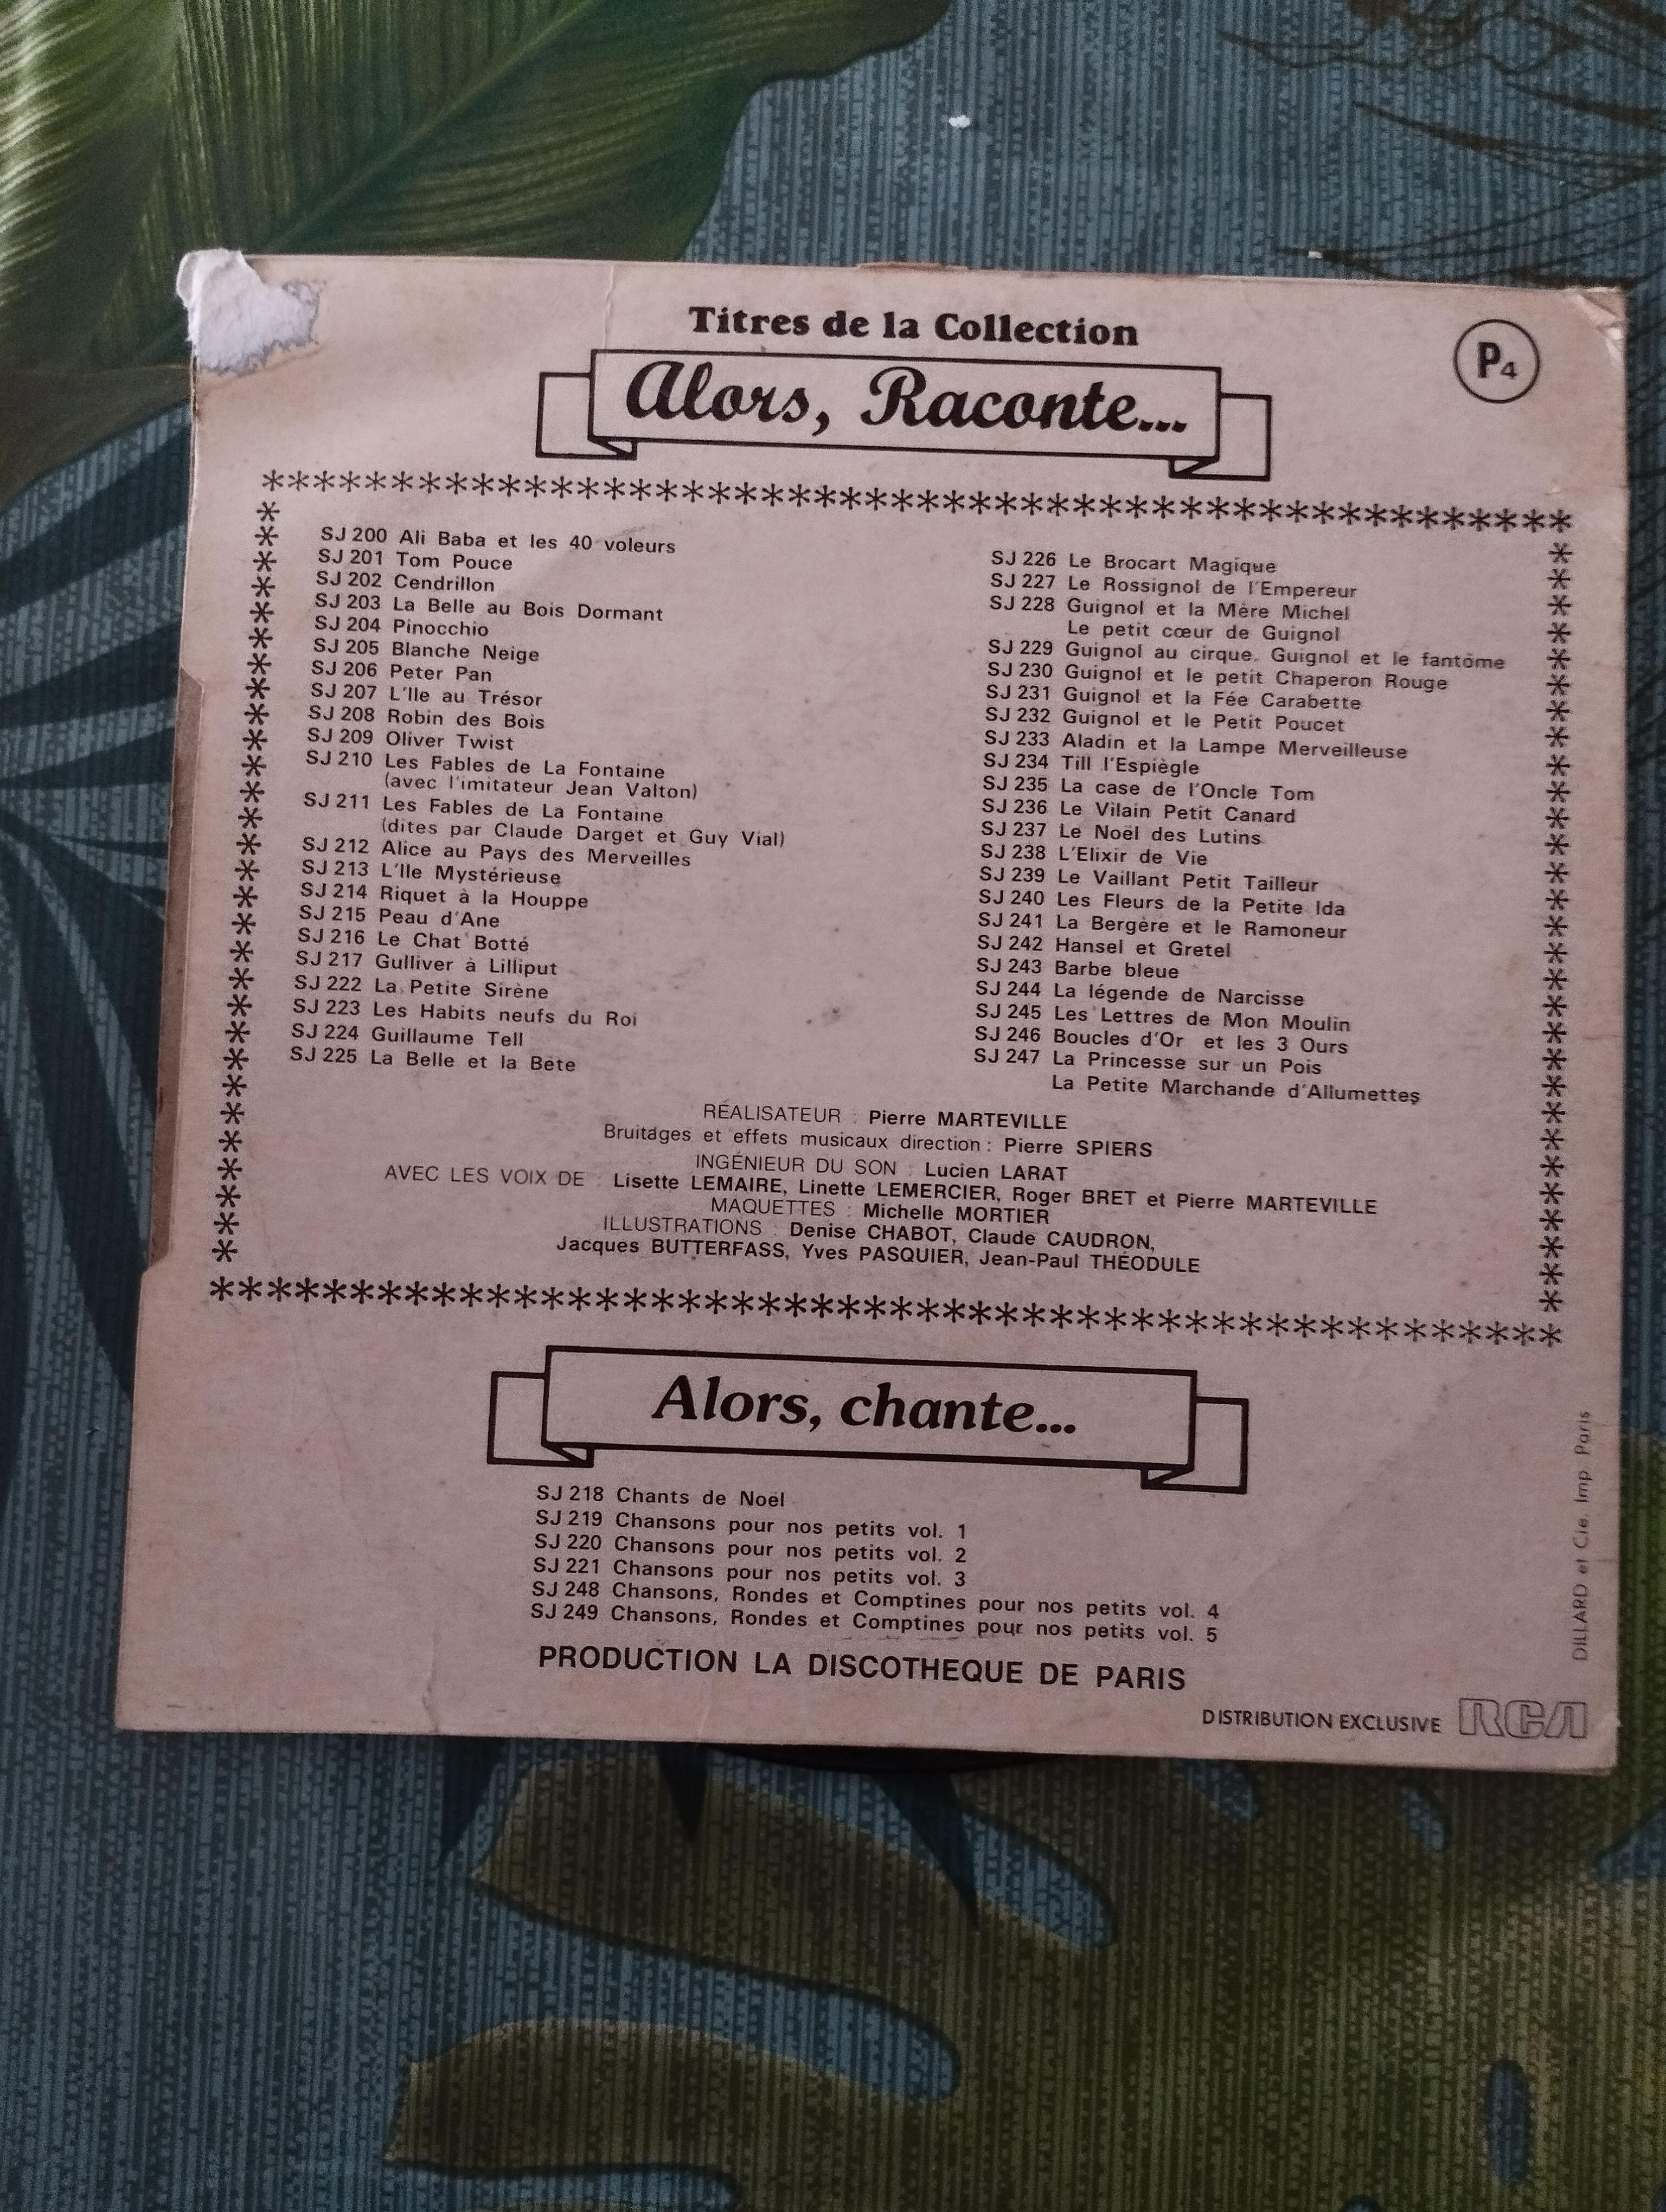 troc de troc disque vinyle 45t - alice au pays des merveilles image 1